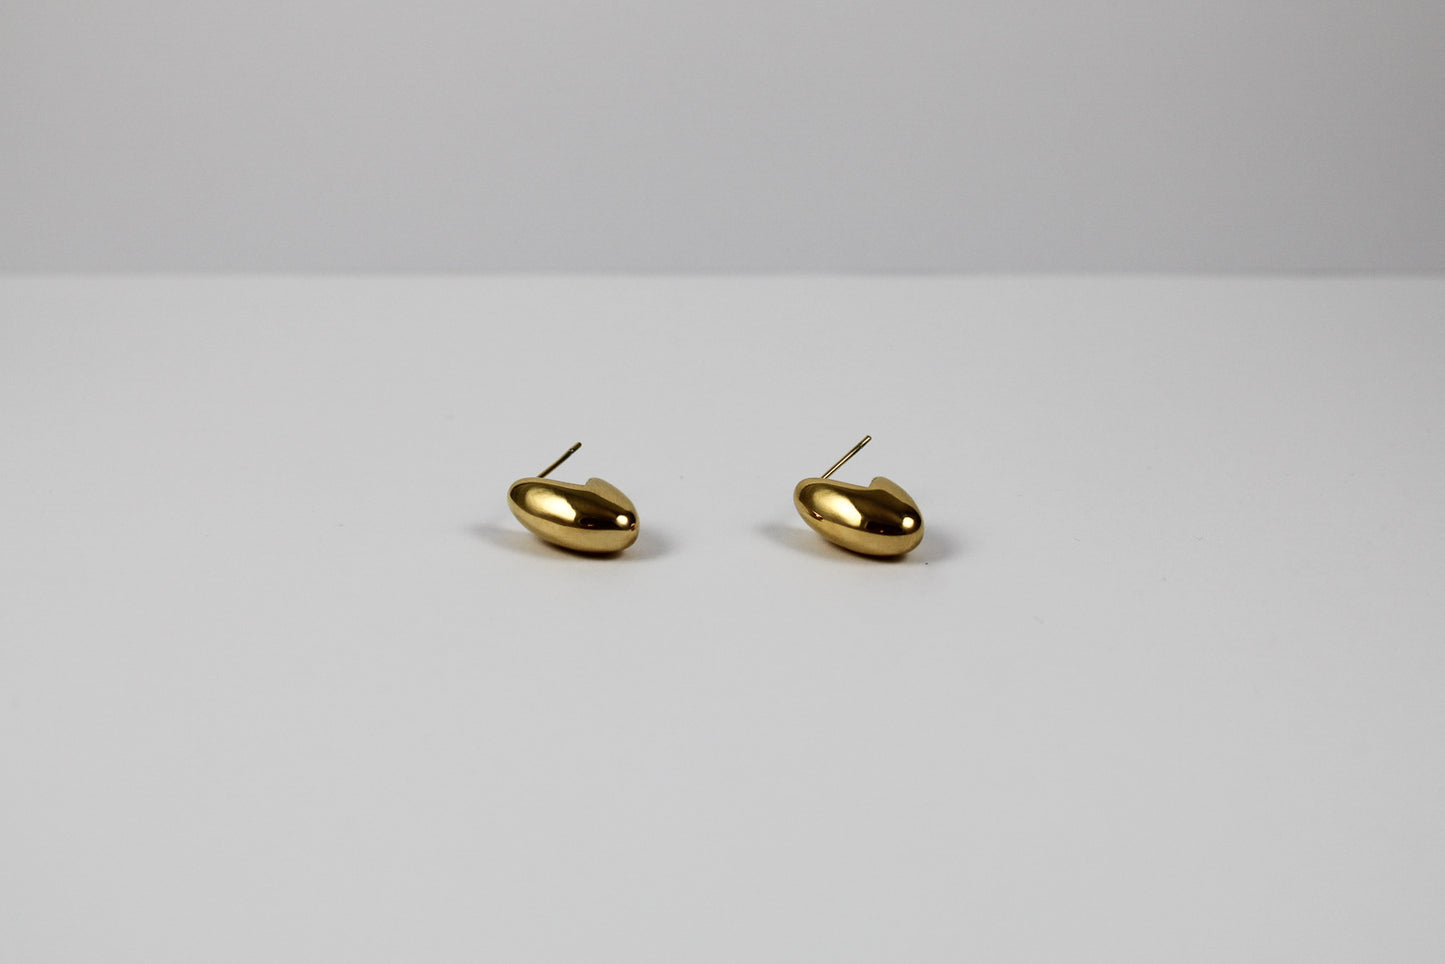 Gold Macondo earrings